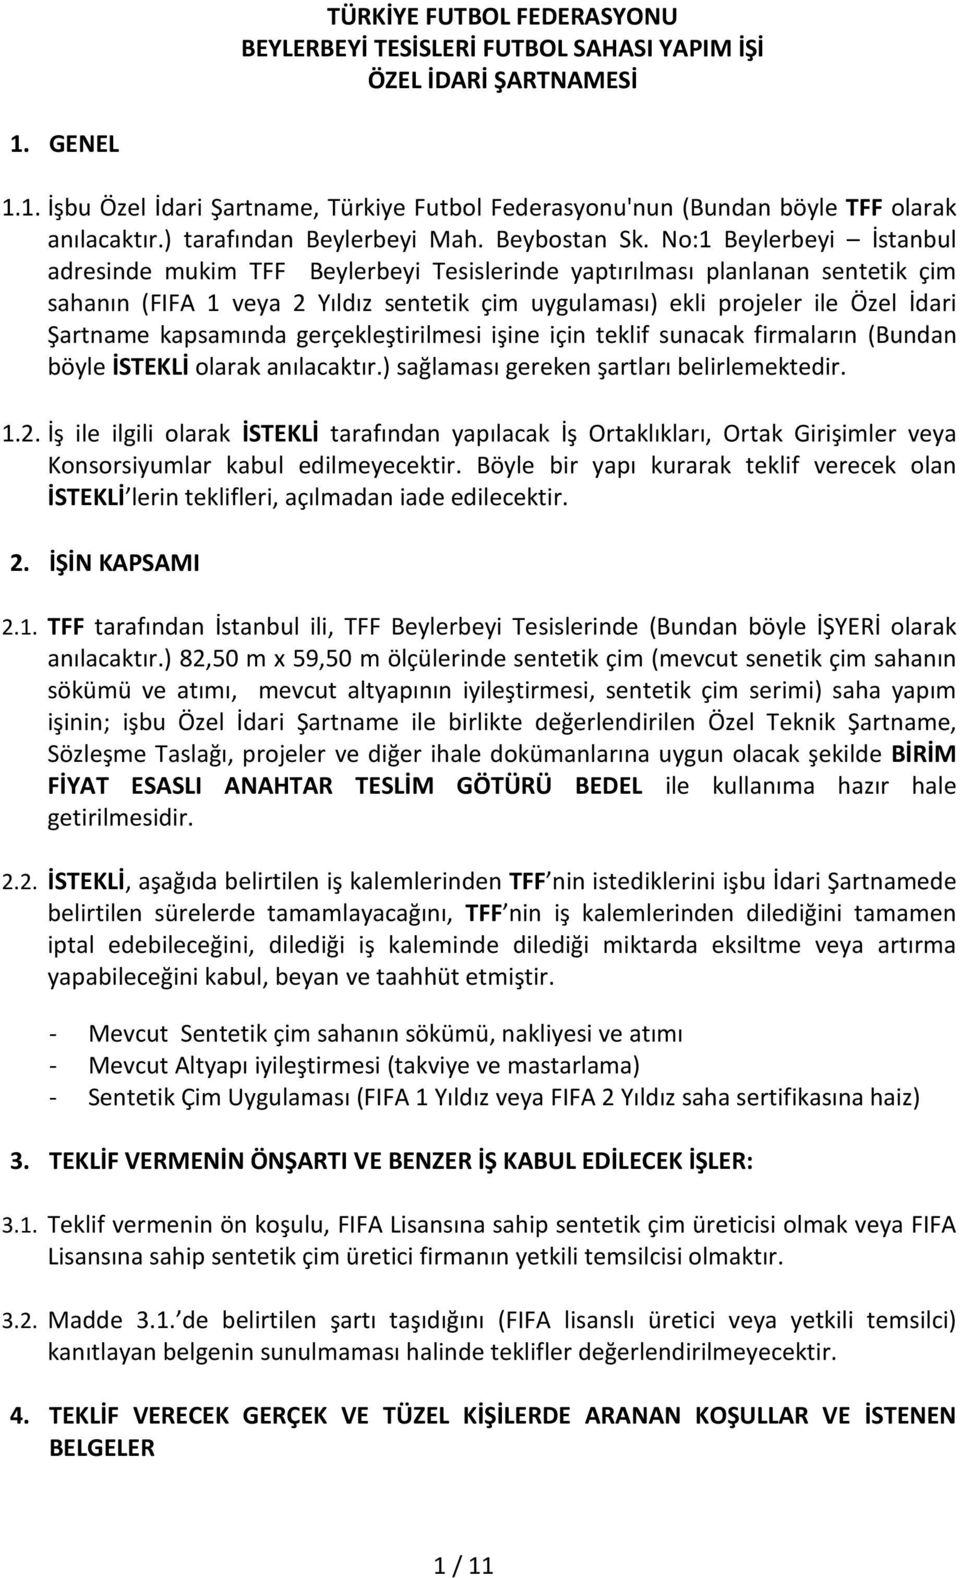 No:1 Beylerbeyi İstanbul adresinde mukim TFF Beylerbeyi Tesislerinde yaptırılması planlanan sentetik çim sahanın (FIFA 1 veya 2 Yıldız sentetik çim uygulaması) ekli projeler ile Özel İdari Şartname